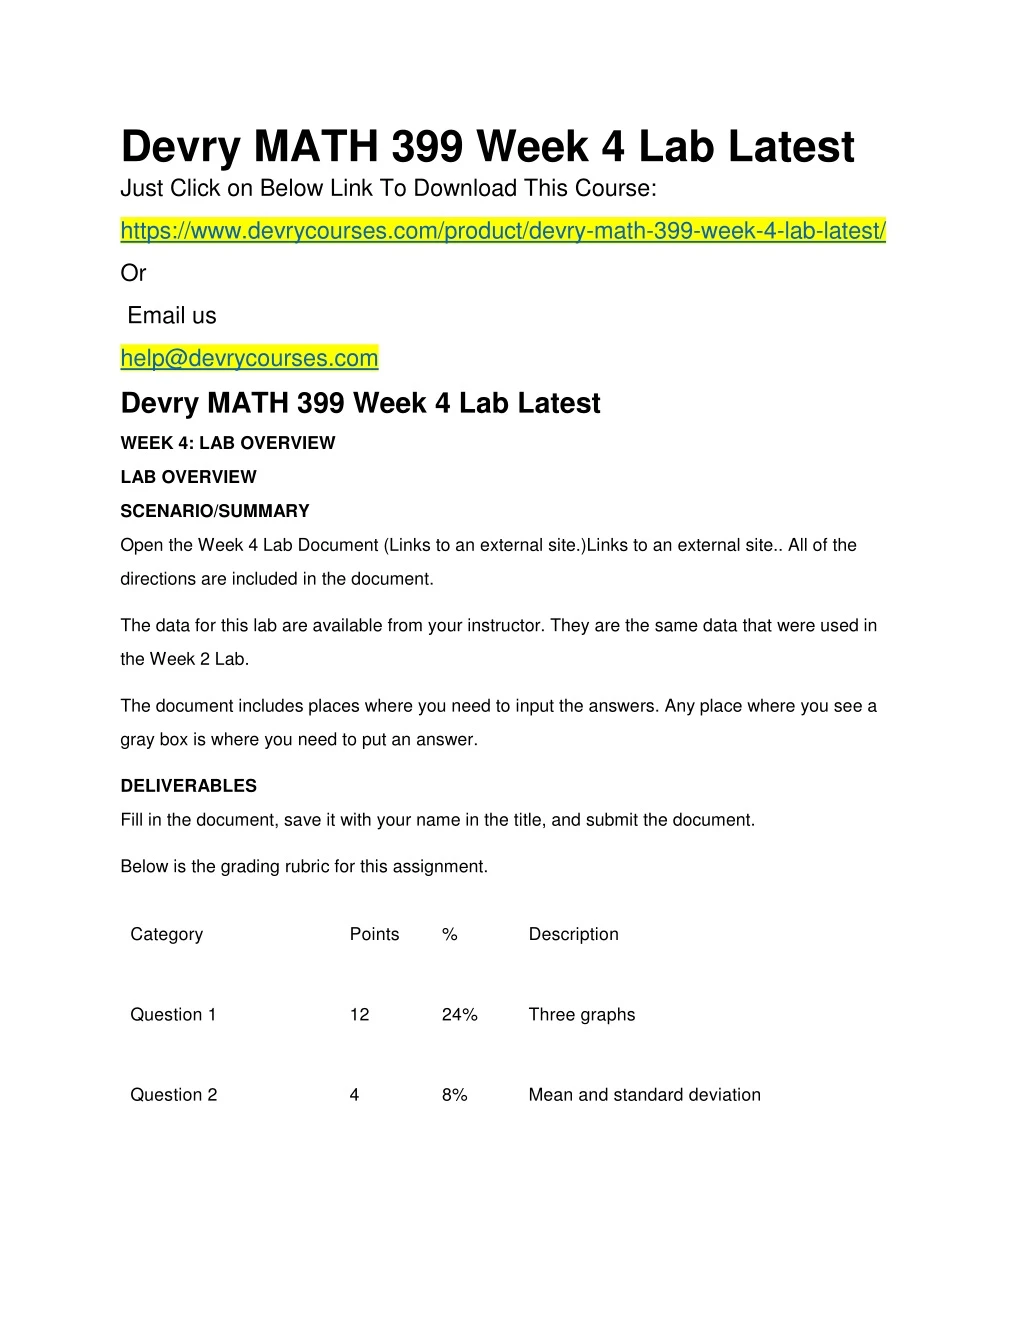 devry math 399 week 4 lab latest just click